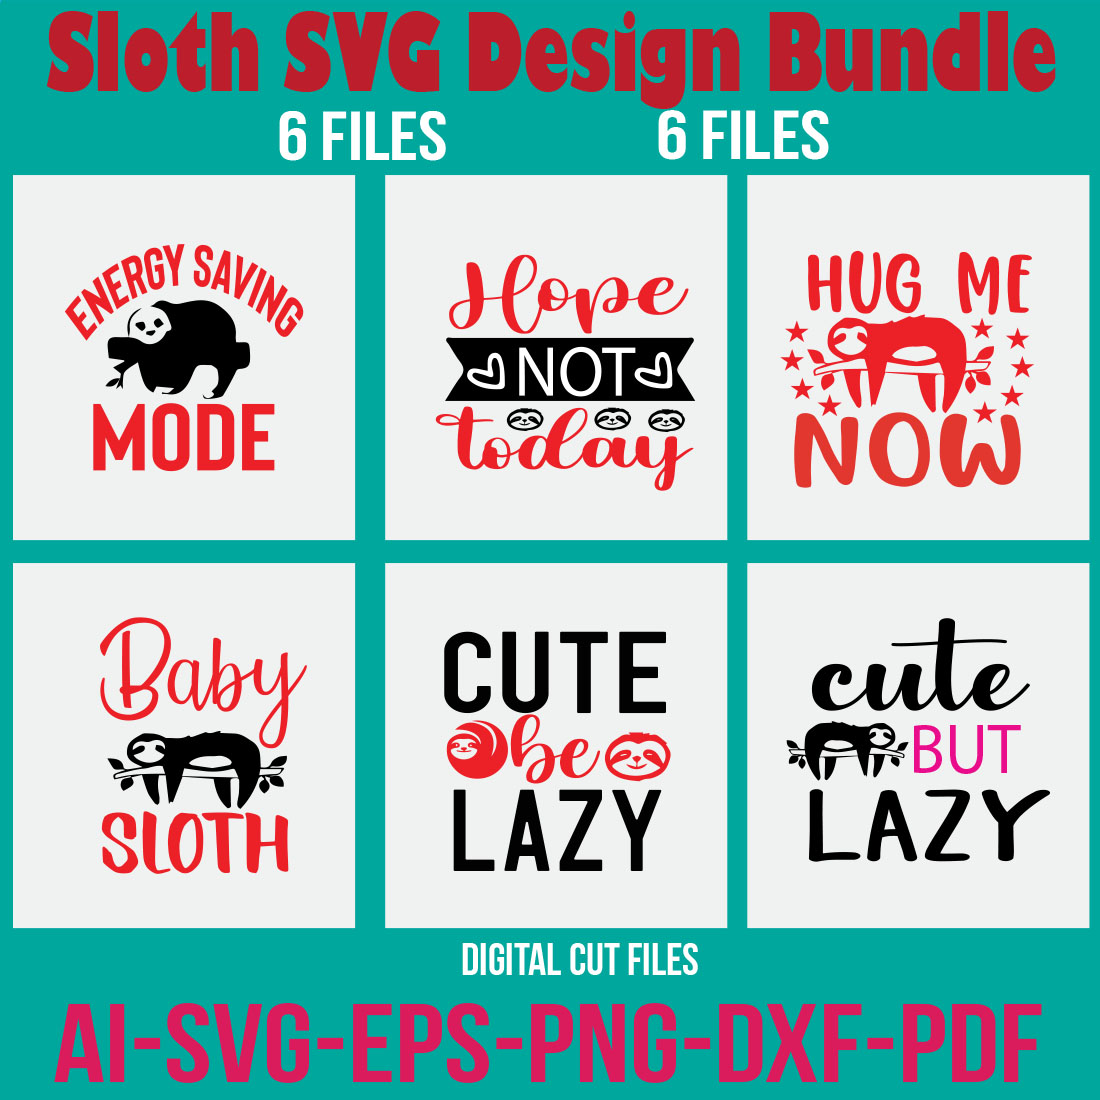 Sloth SVG Design Bundle cover image.